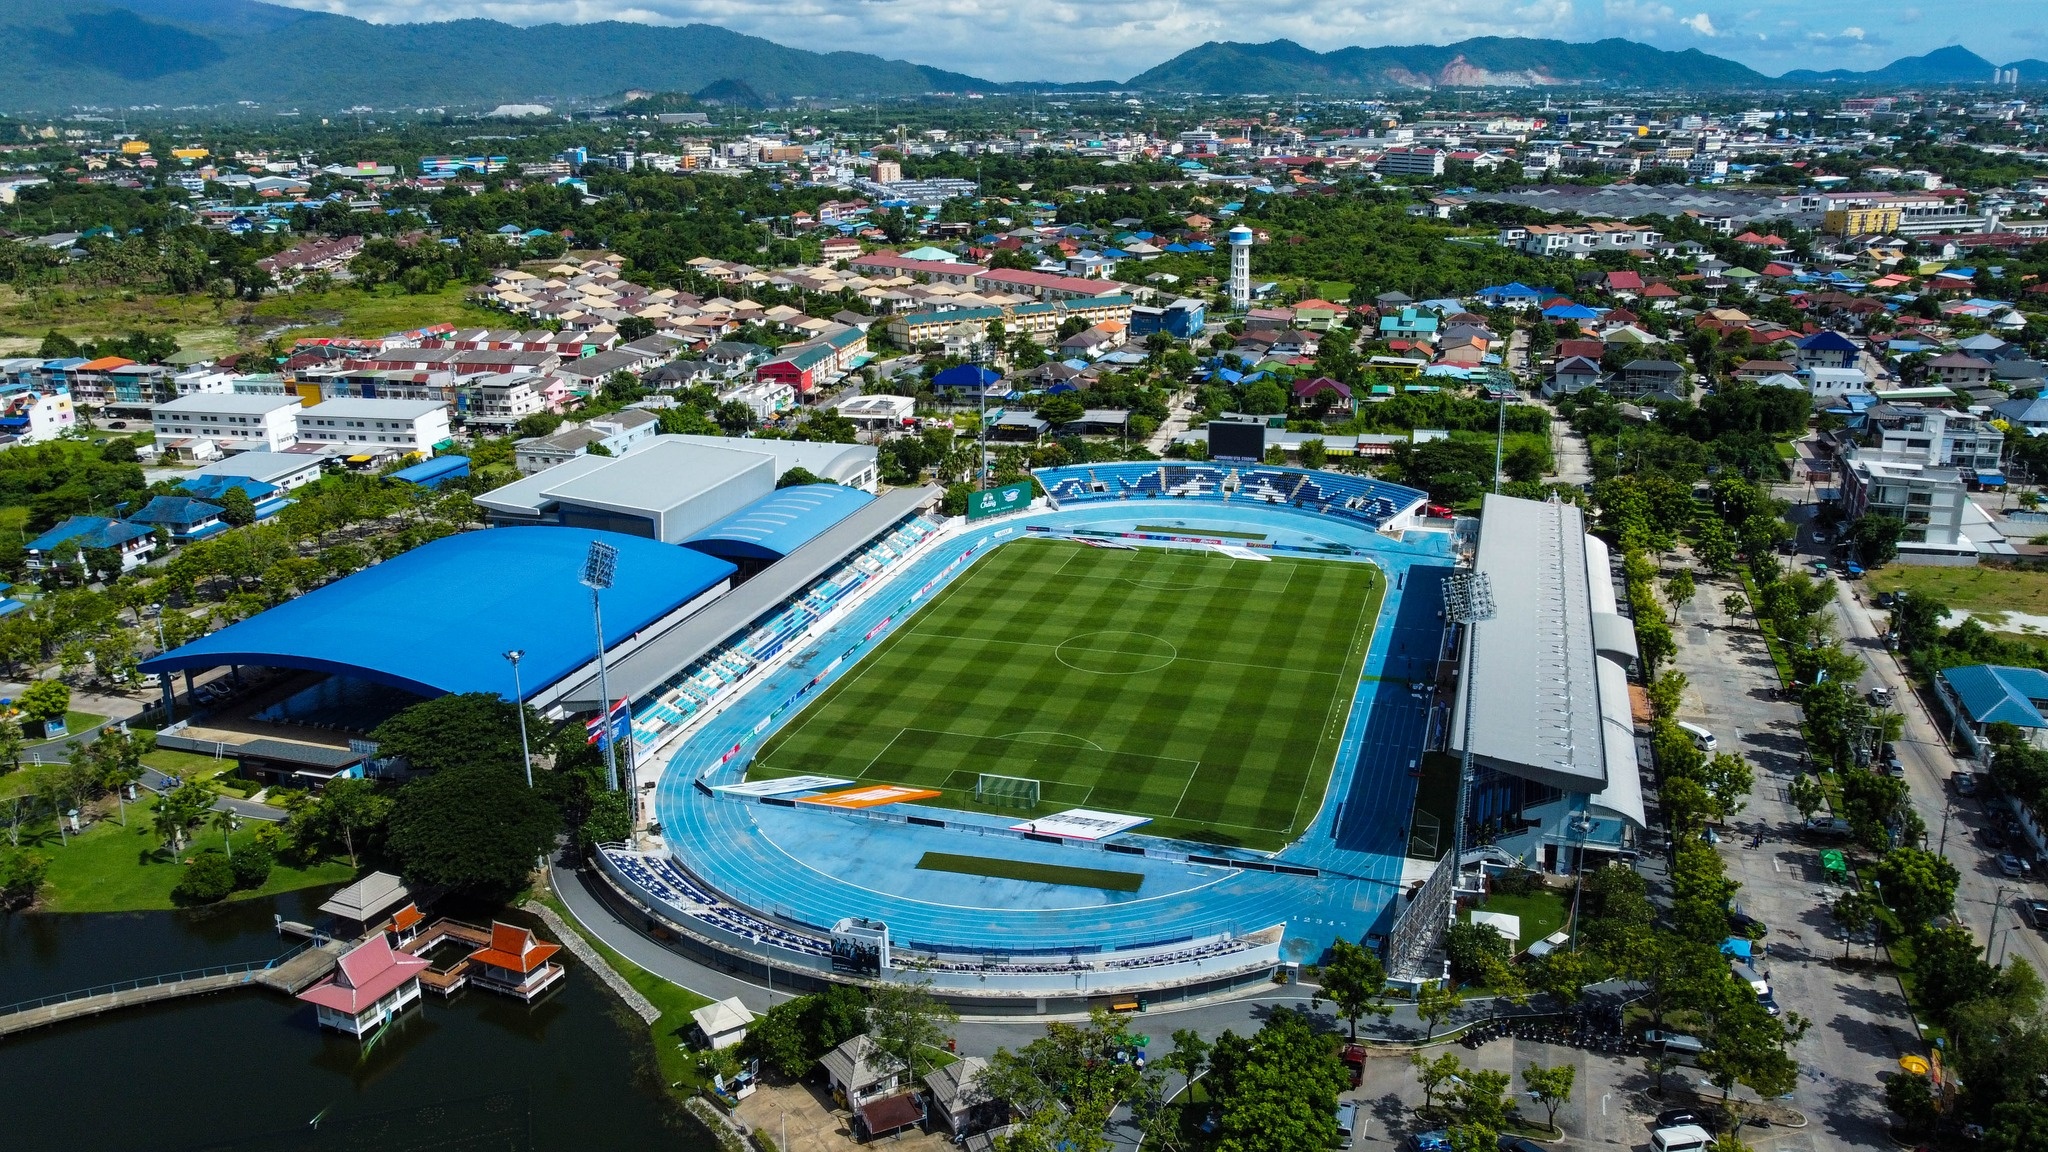 Chonburi Stadium